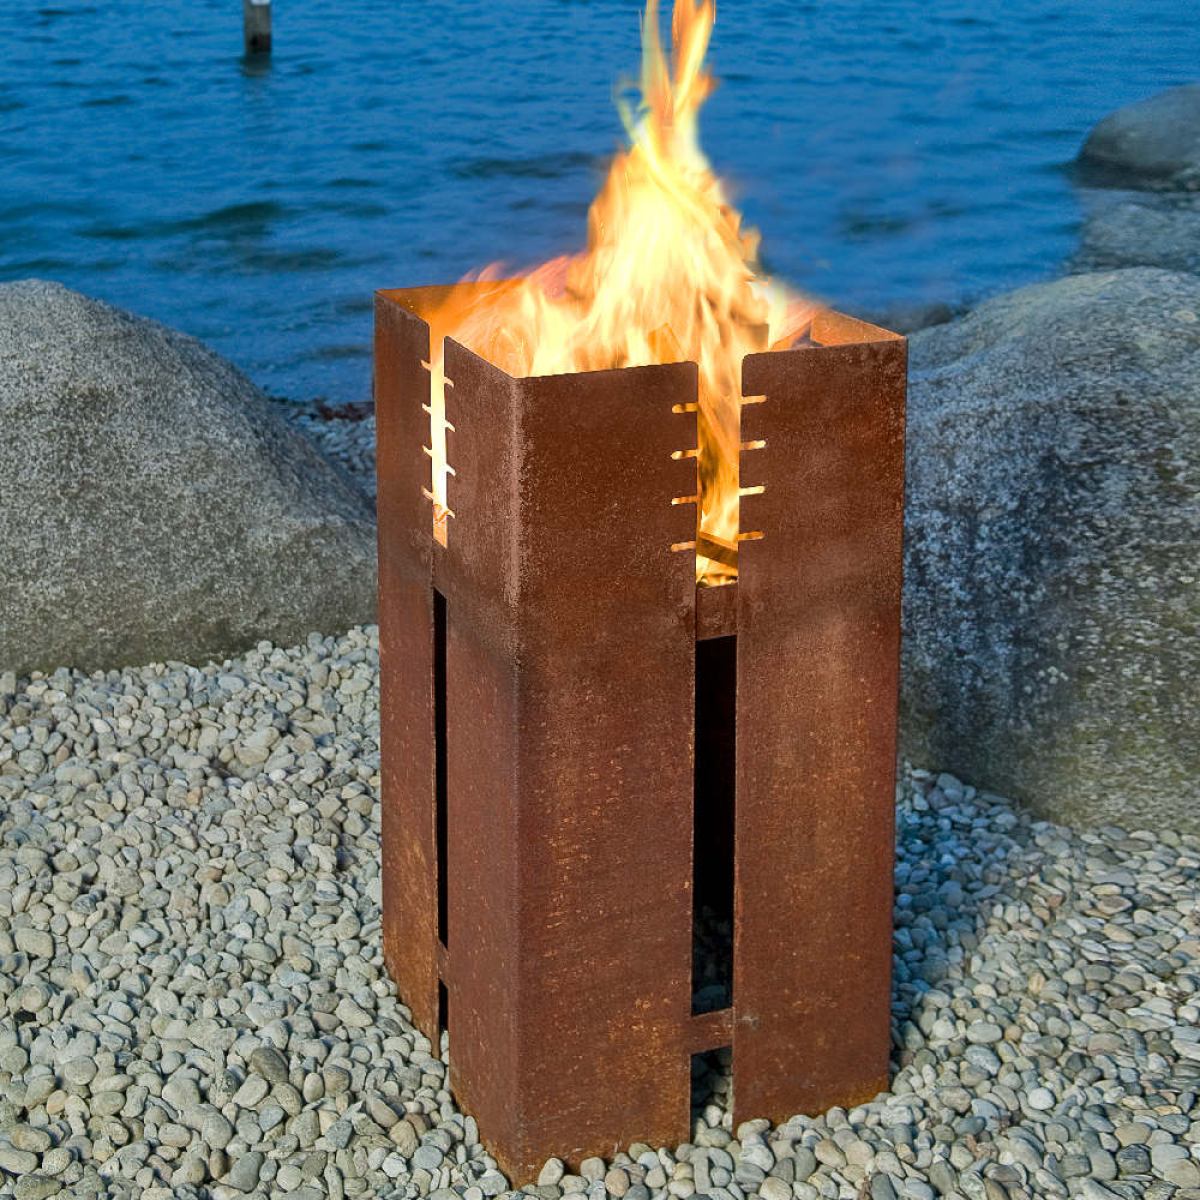 Aufrechter Feuerkorb aus wetterfestem Stahl mit Grillfunktion